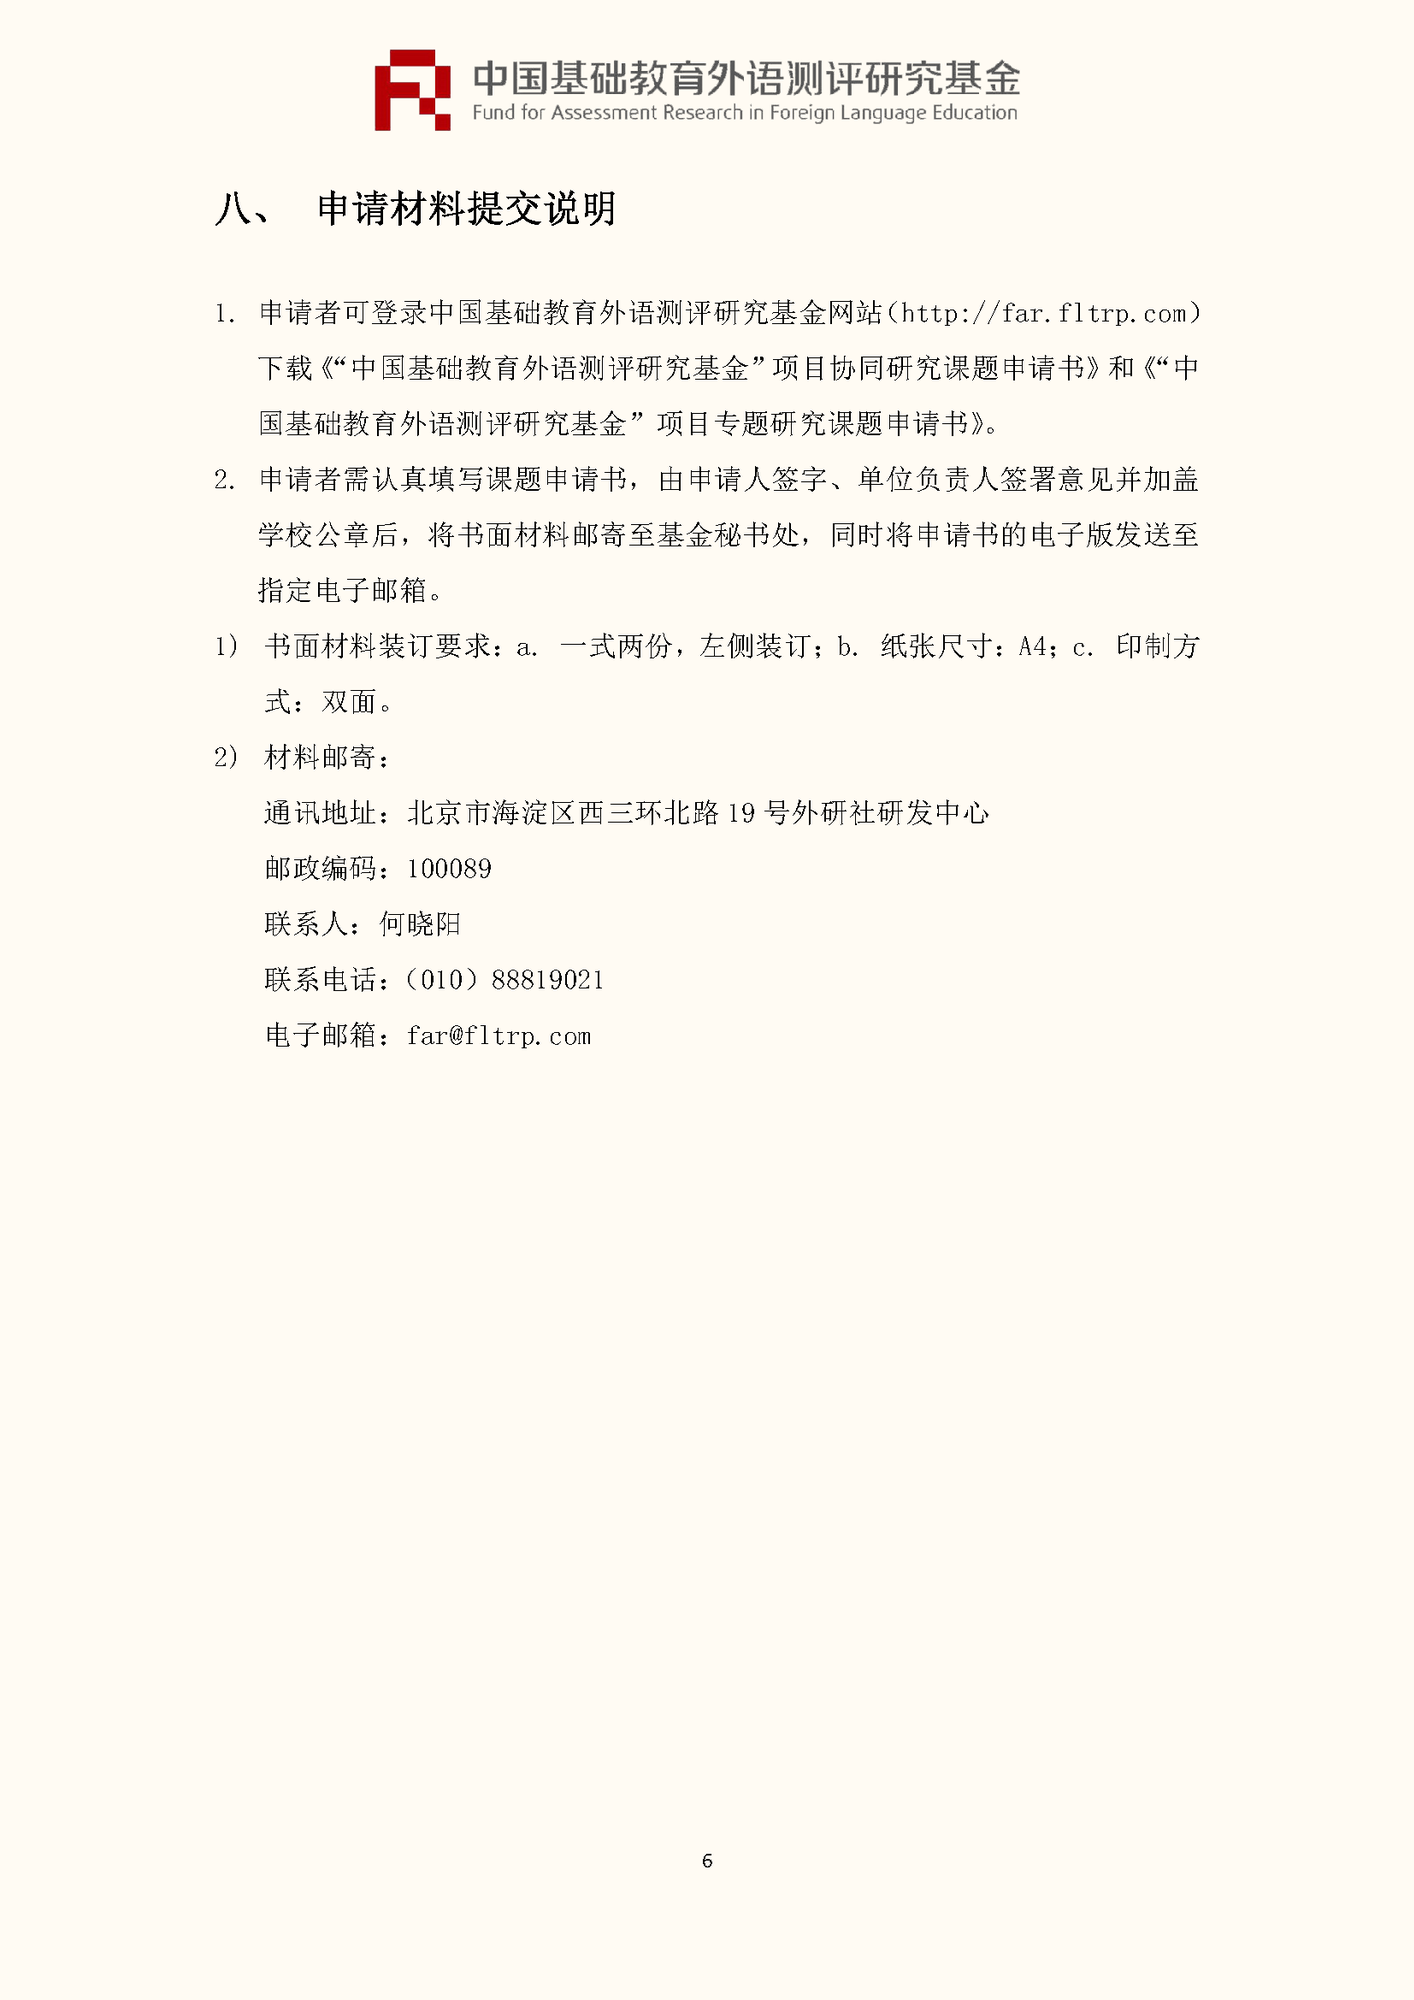 0520-”中国基础教育外语测评研究基金“项目第四期课题申报指南_页面_08